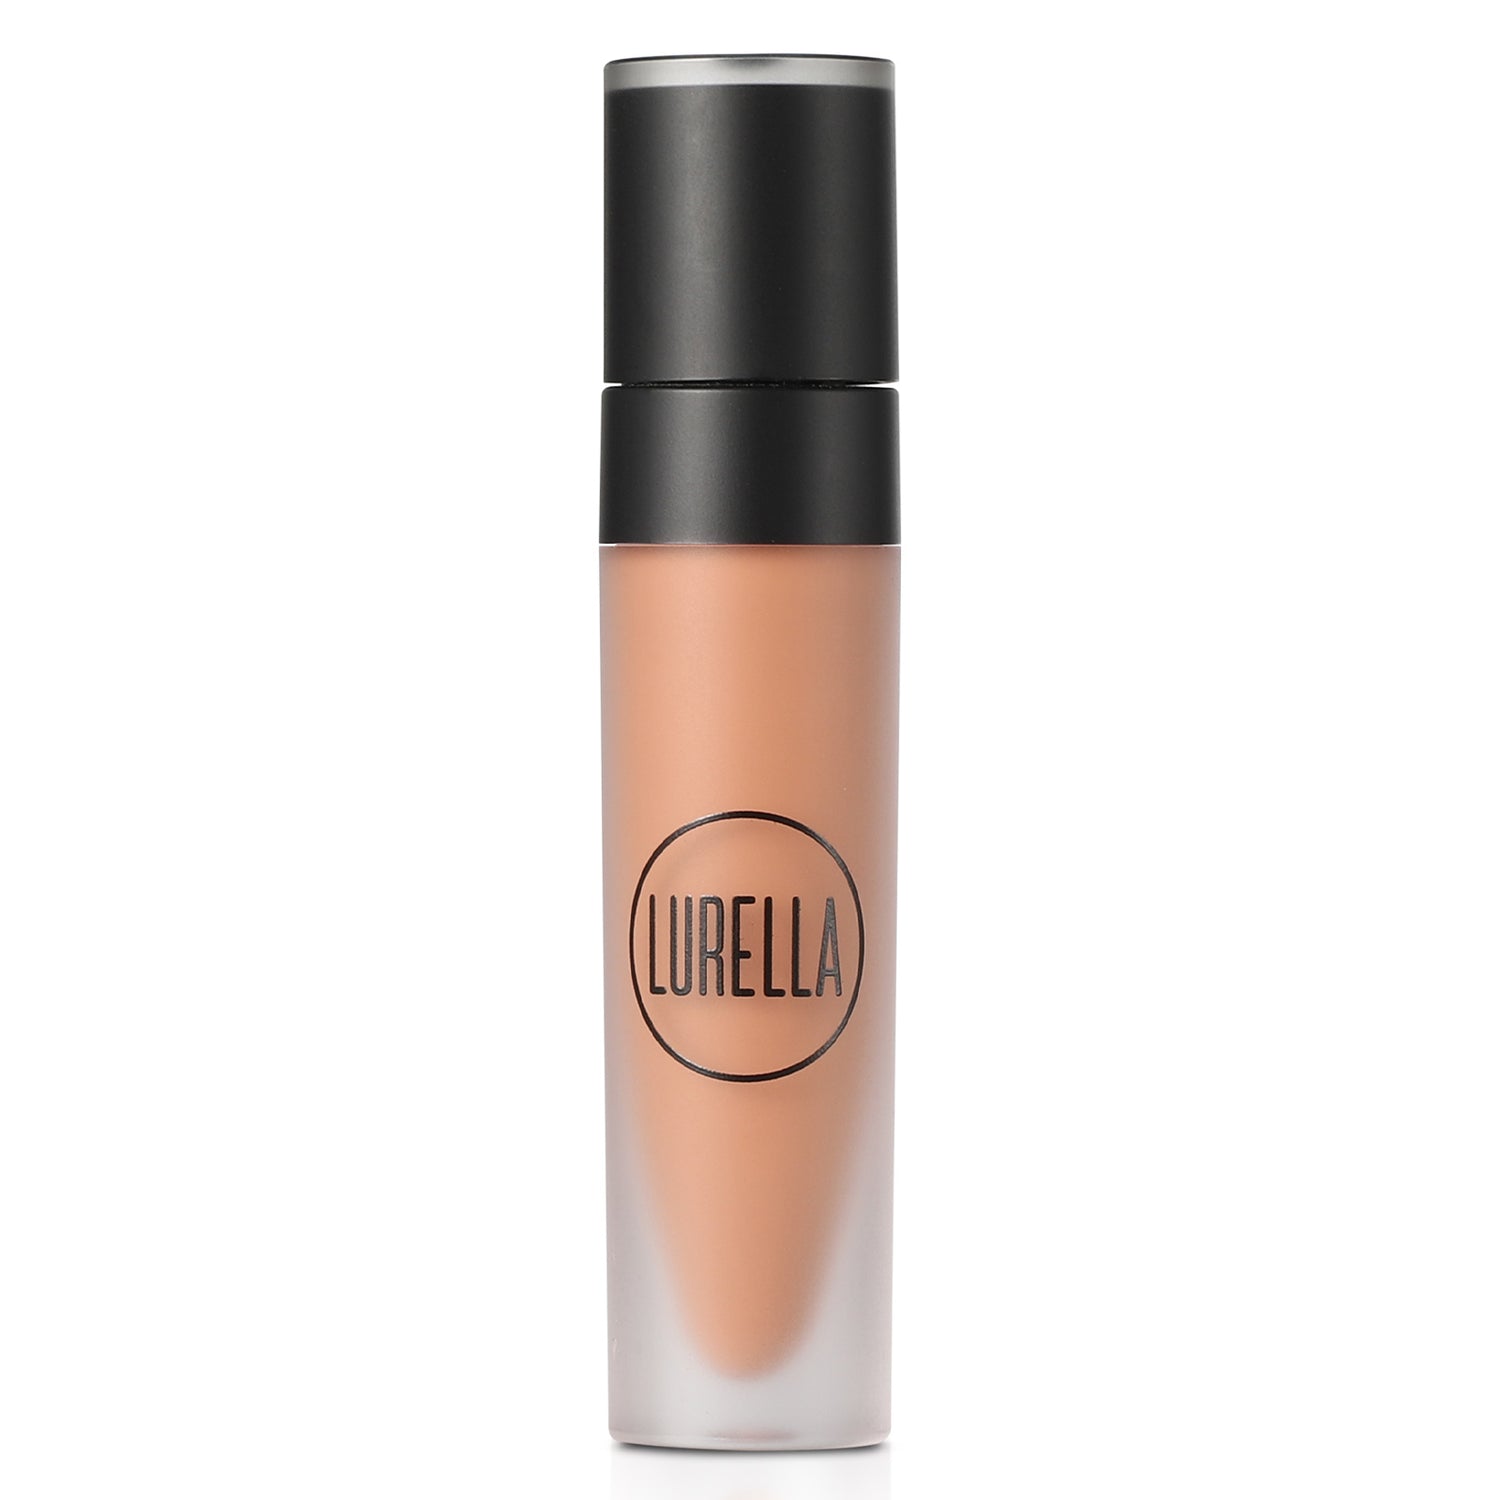 Lurella x The Aguilars - Extravagant Lipsticks